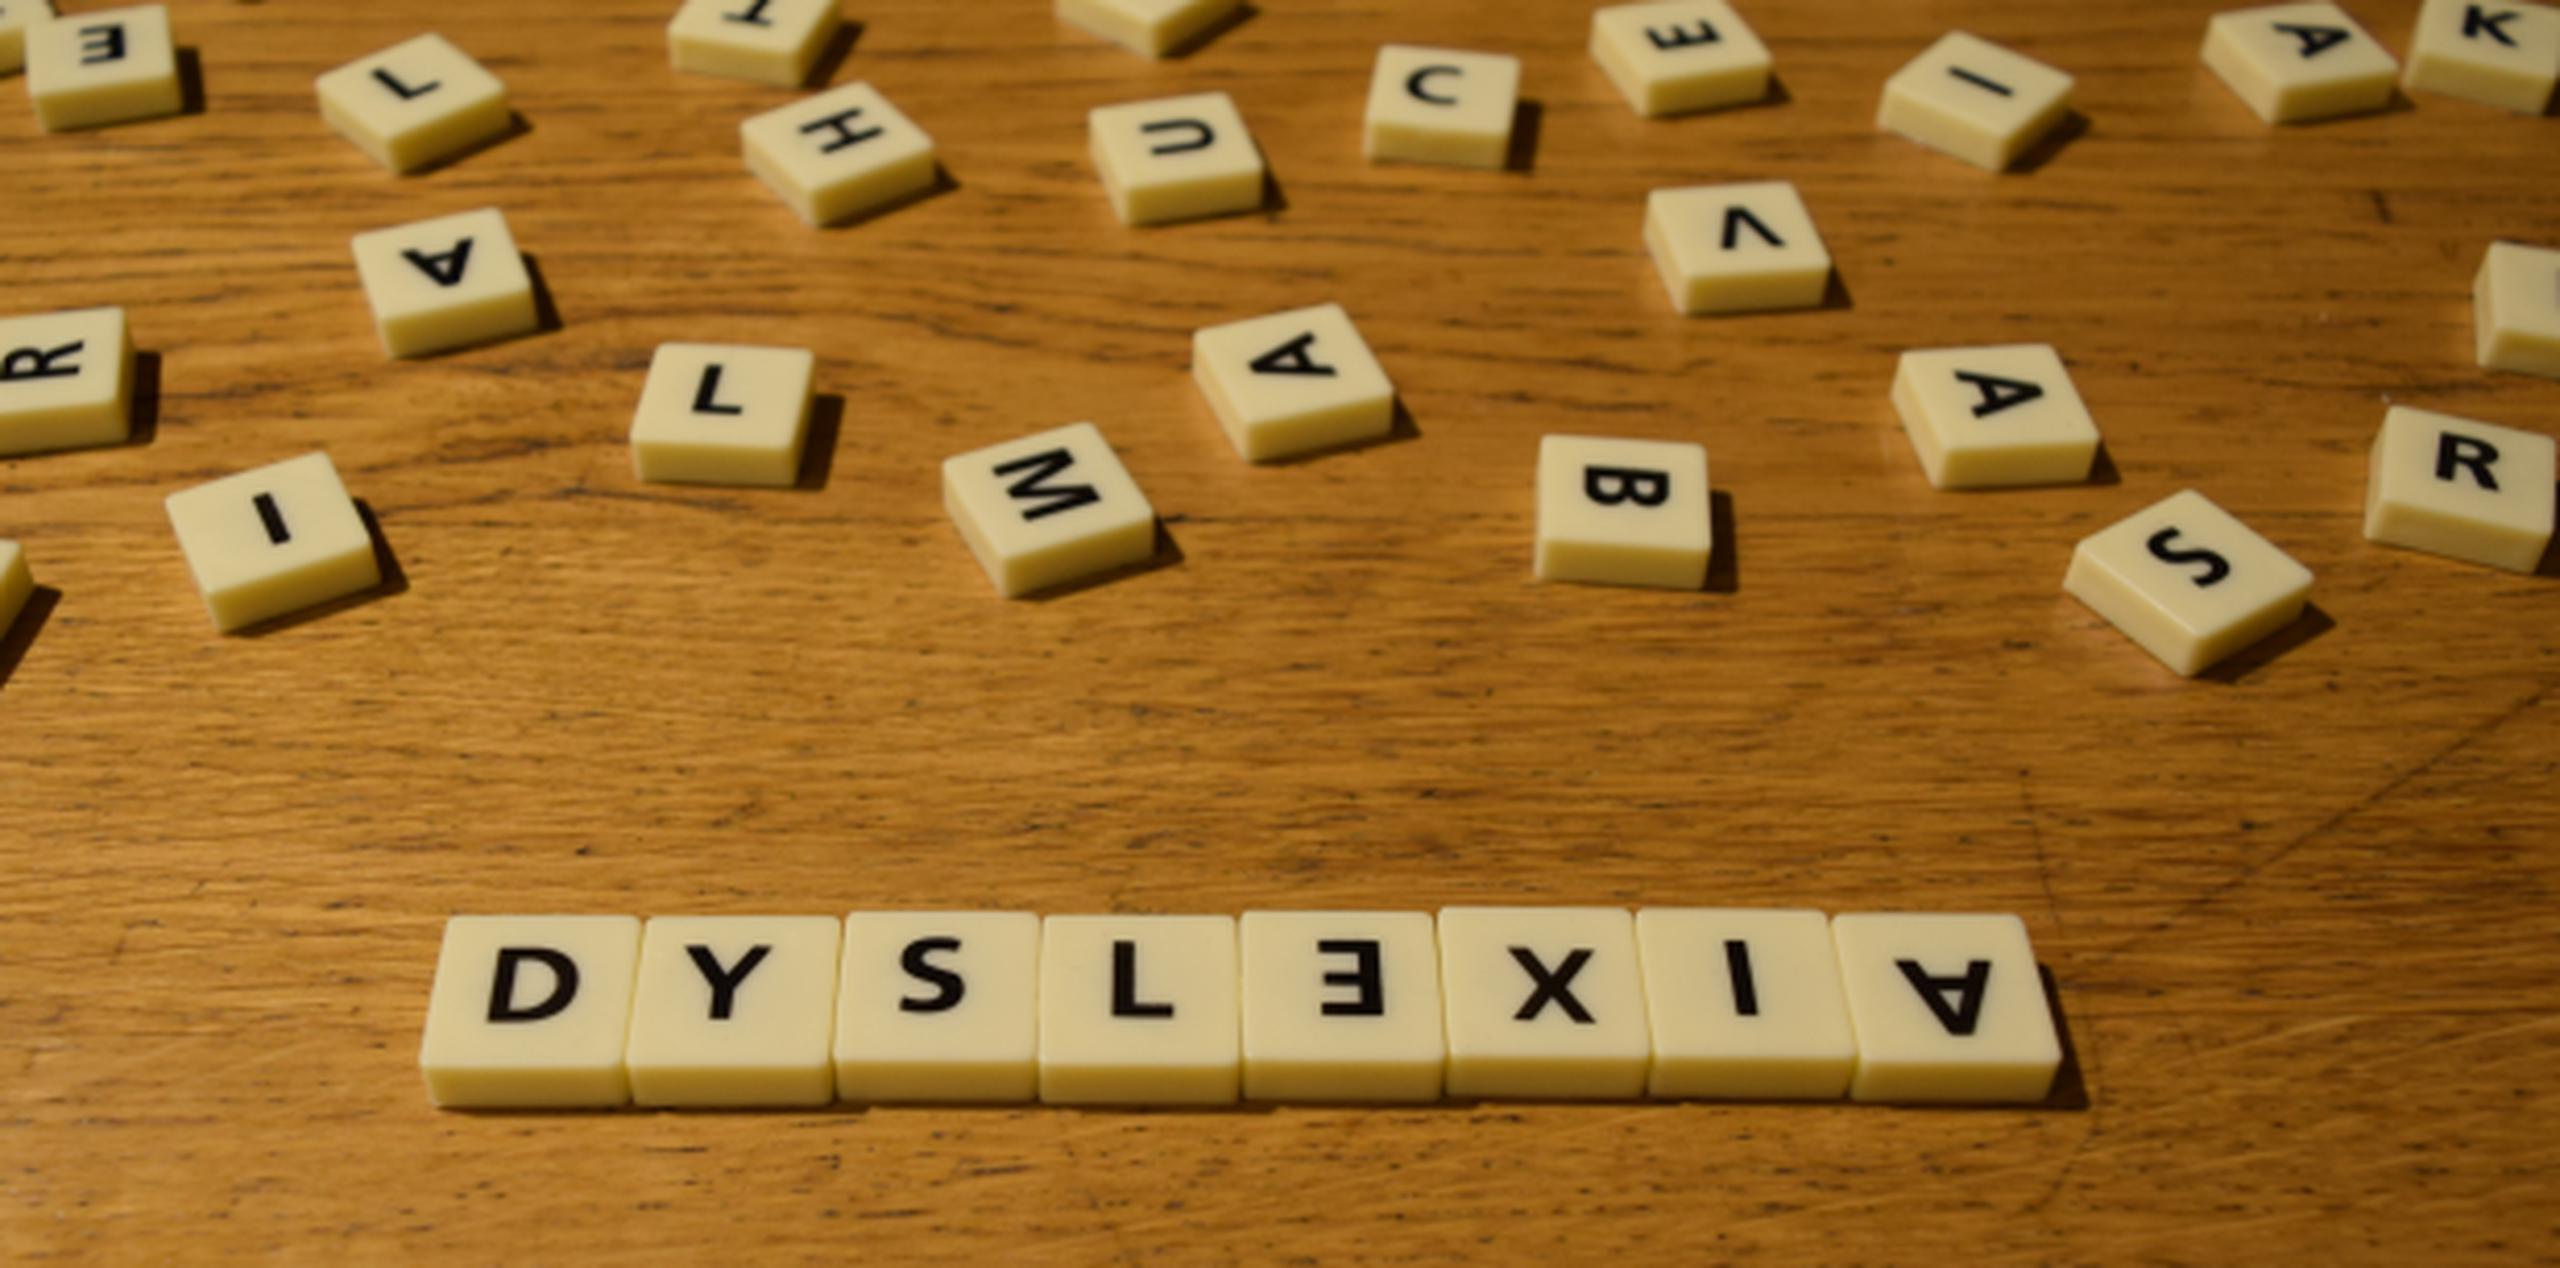 La dislexia es el más conocido de los Trastornos de Aprendizaje y muchas personas lo asocian con la escritura invertida o en espejo. (Shutterstock)